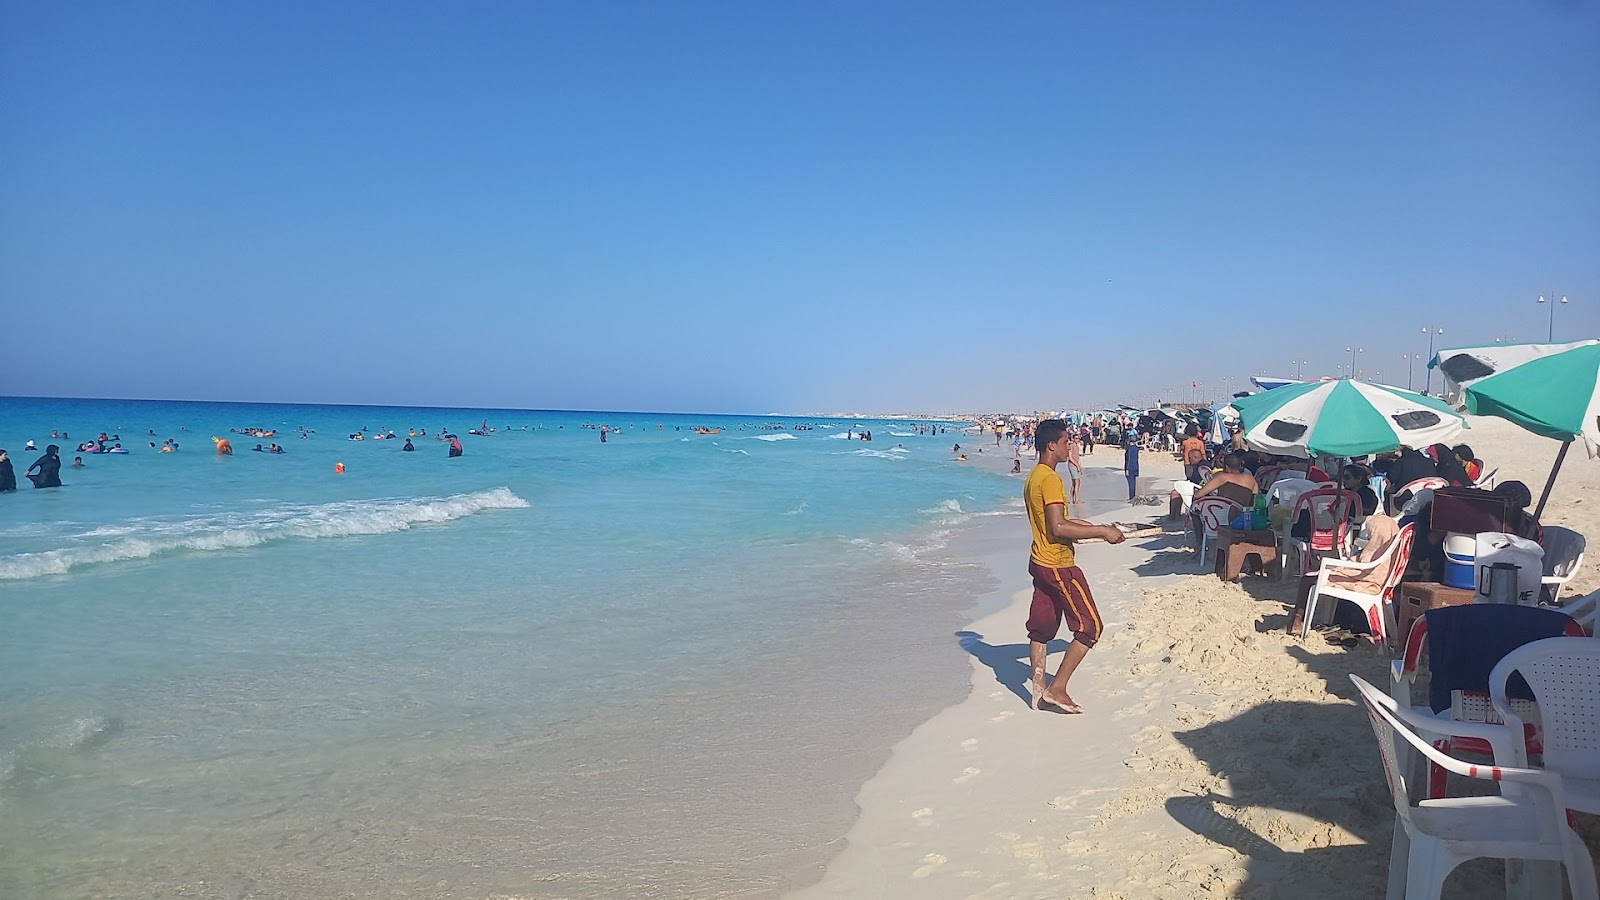 Dora Al Abyad Beach'in fotoğrafı - rahatlamayı sevenler arasında popüler bir yer